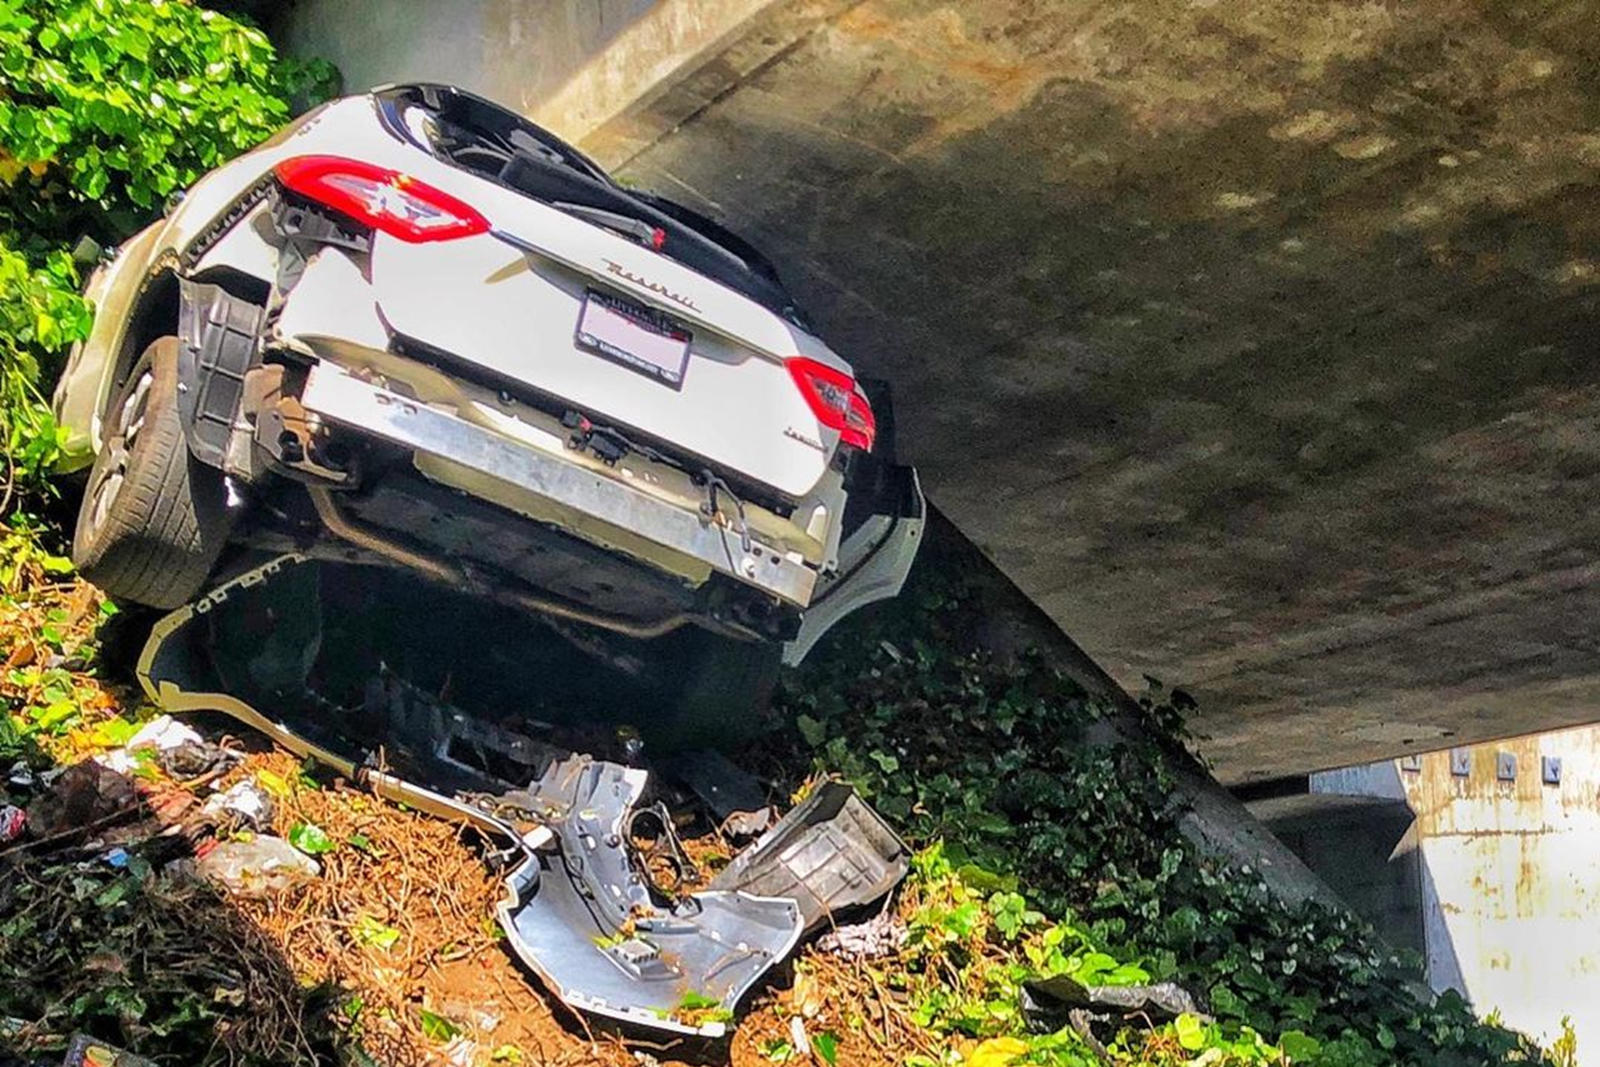 Чудом сбежавший водитель выжил в серьезной аварии, в которую трудно поверить, если посмотреть на повреждения. 32-летний мужчина пожаловался на боль, когда его освободили из искалеченного Maserati и доставили в больницу, но не похоже, что он получил к